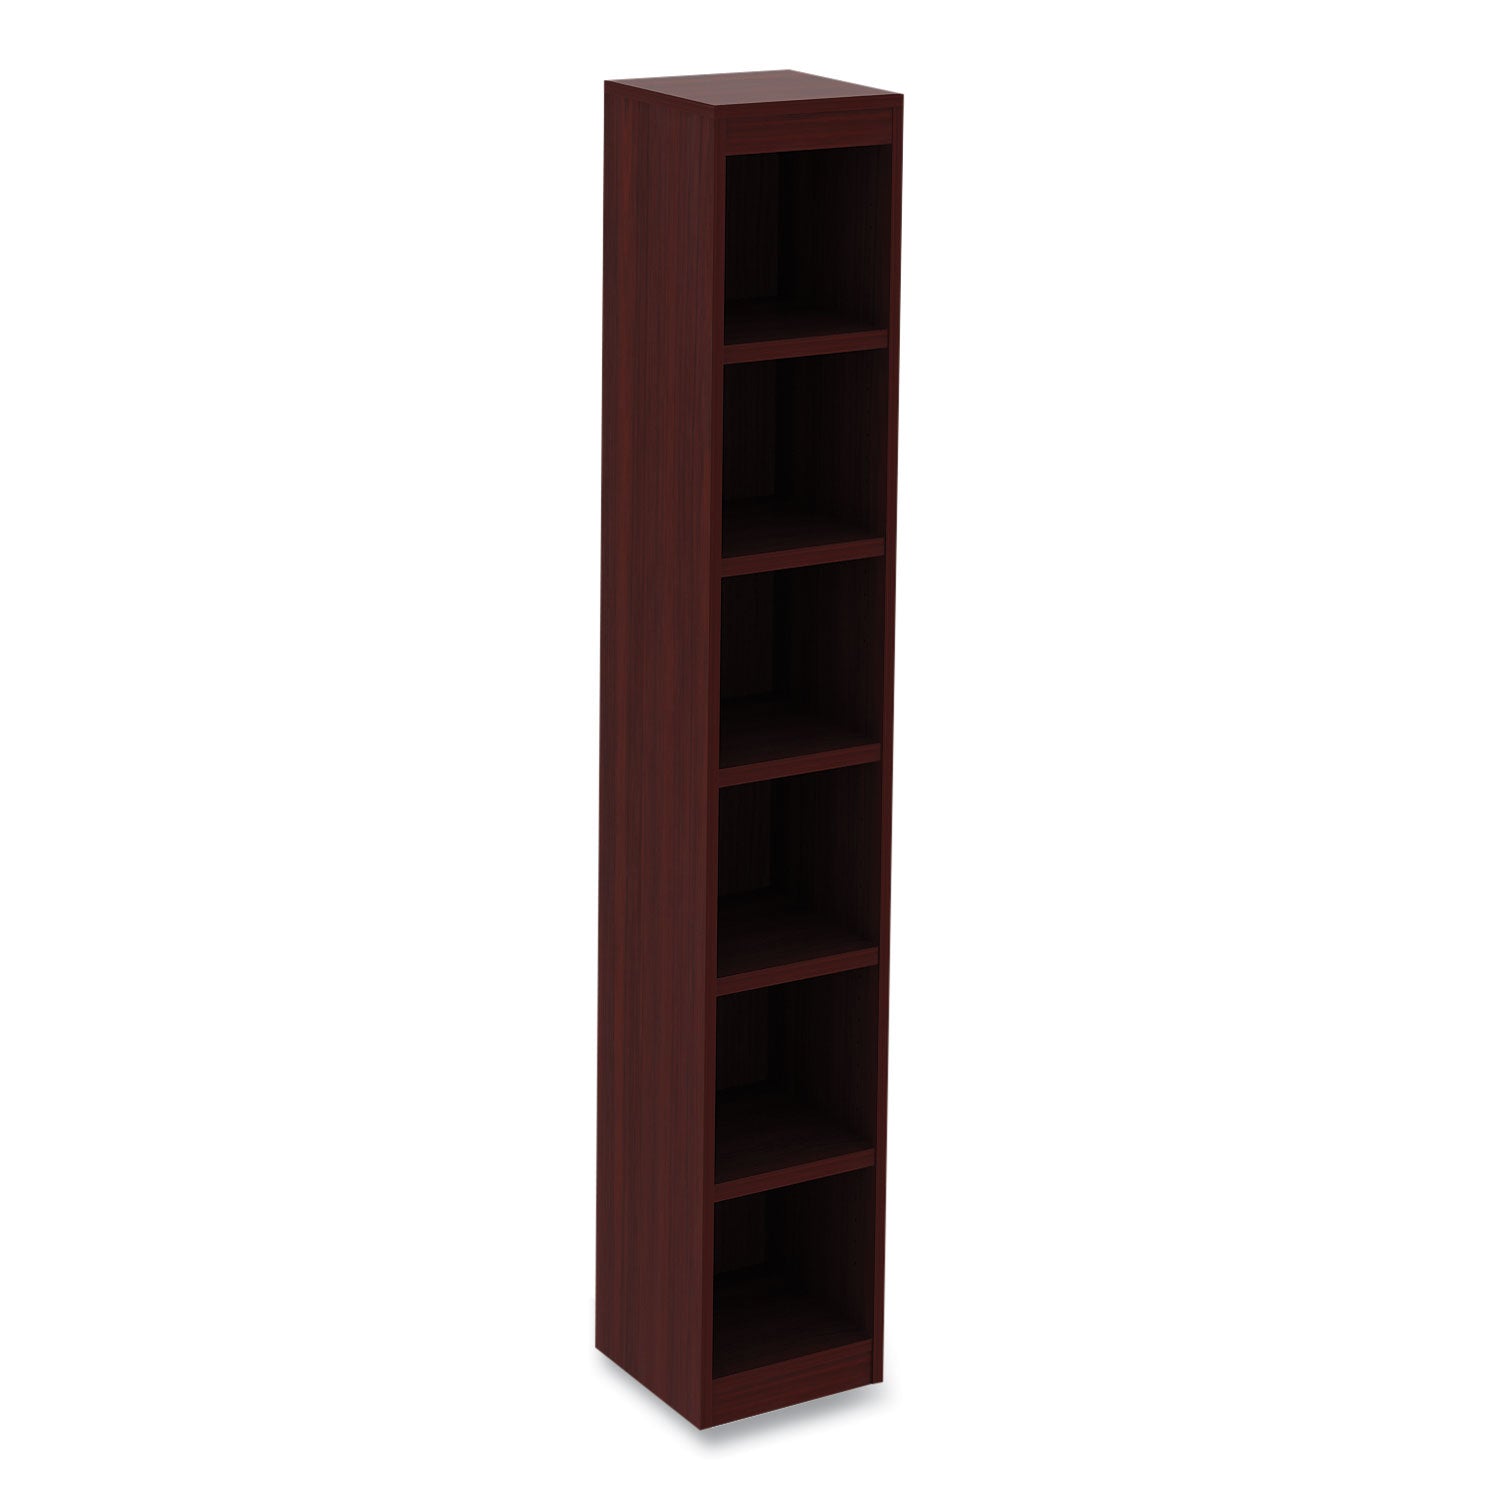 alera-valencia-series-narrow-profile-bookcase-six-shelf-1181w-x-1181d-x-7173h-mahogany_aleva67212my - 1